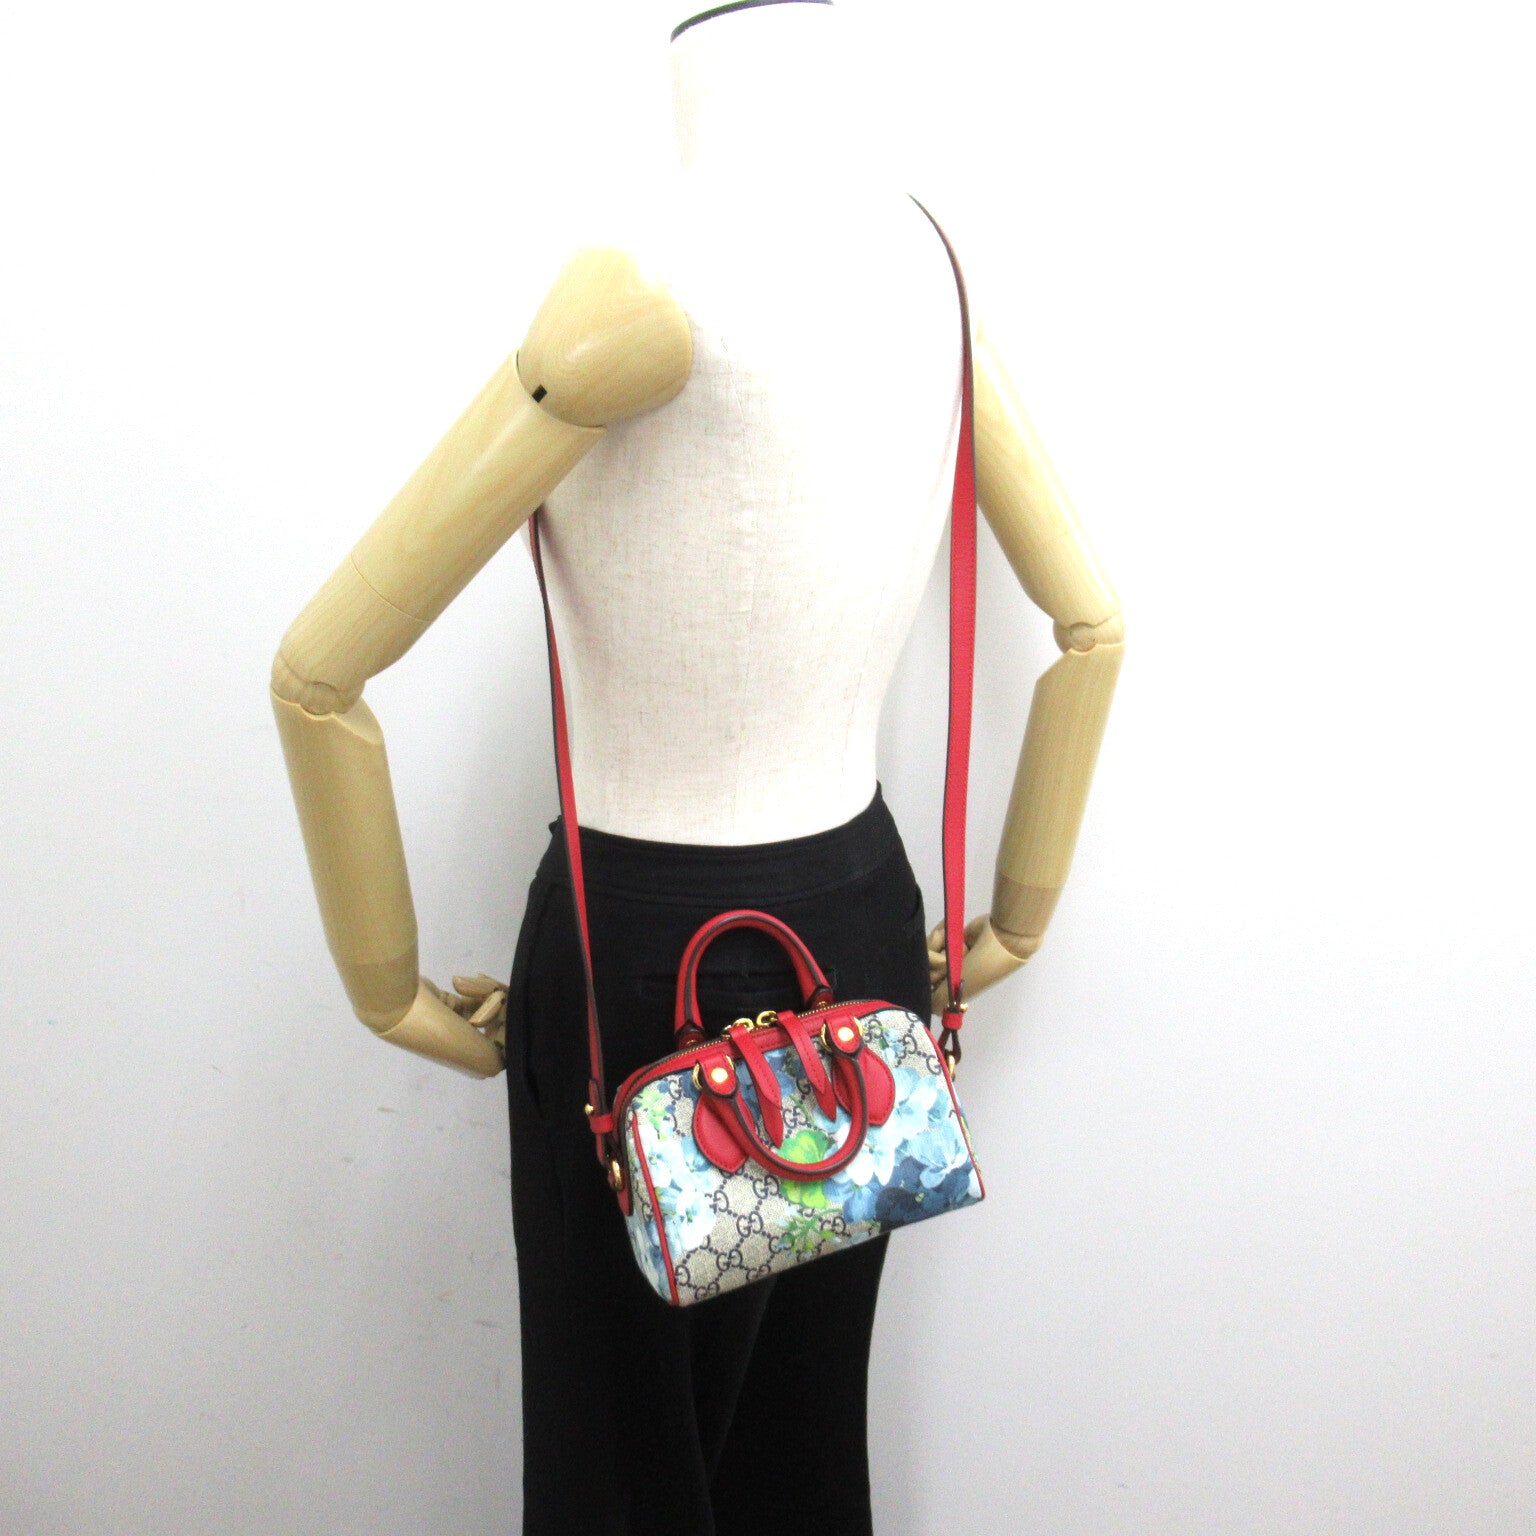 Gucci GG Bloom's Supreme 2w Shoulder Bag 2way Shoulder Bag PVC Coated Canvas  Navy  / Red Series 546312